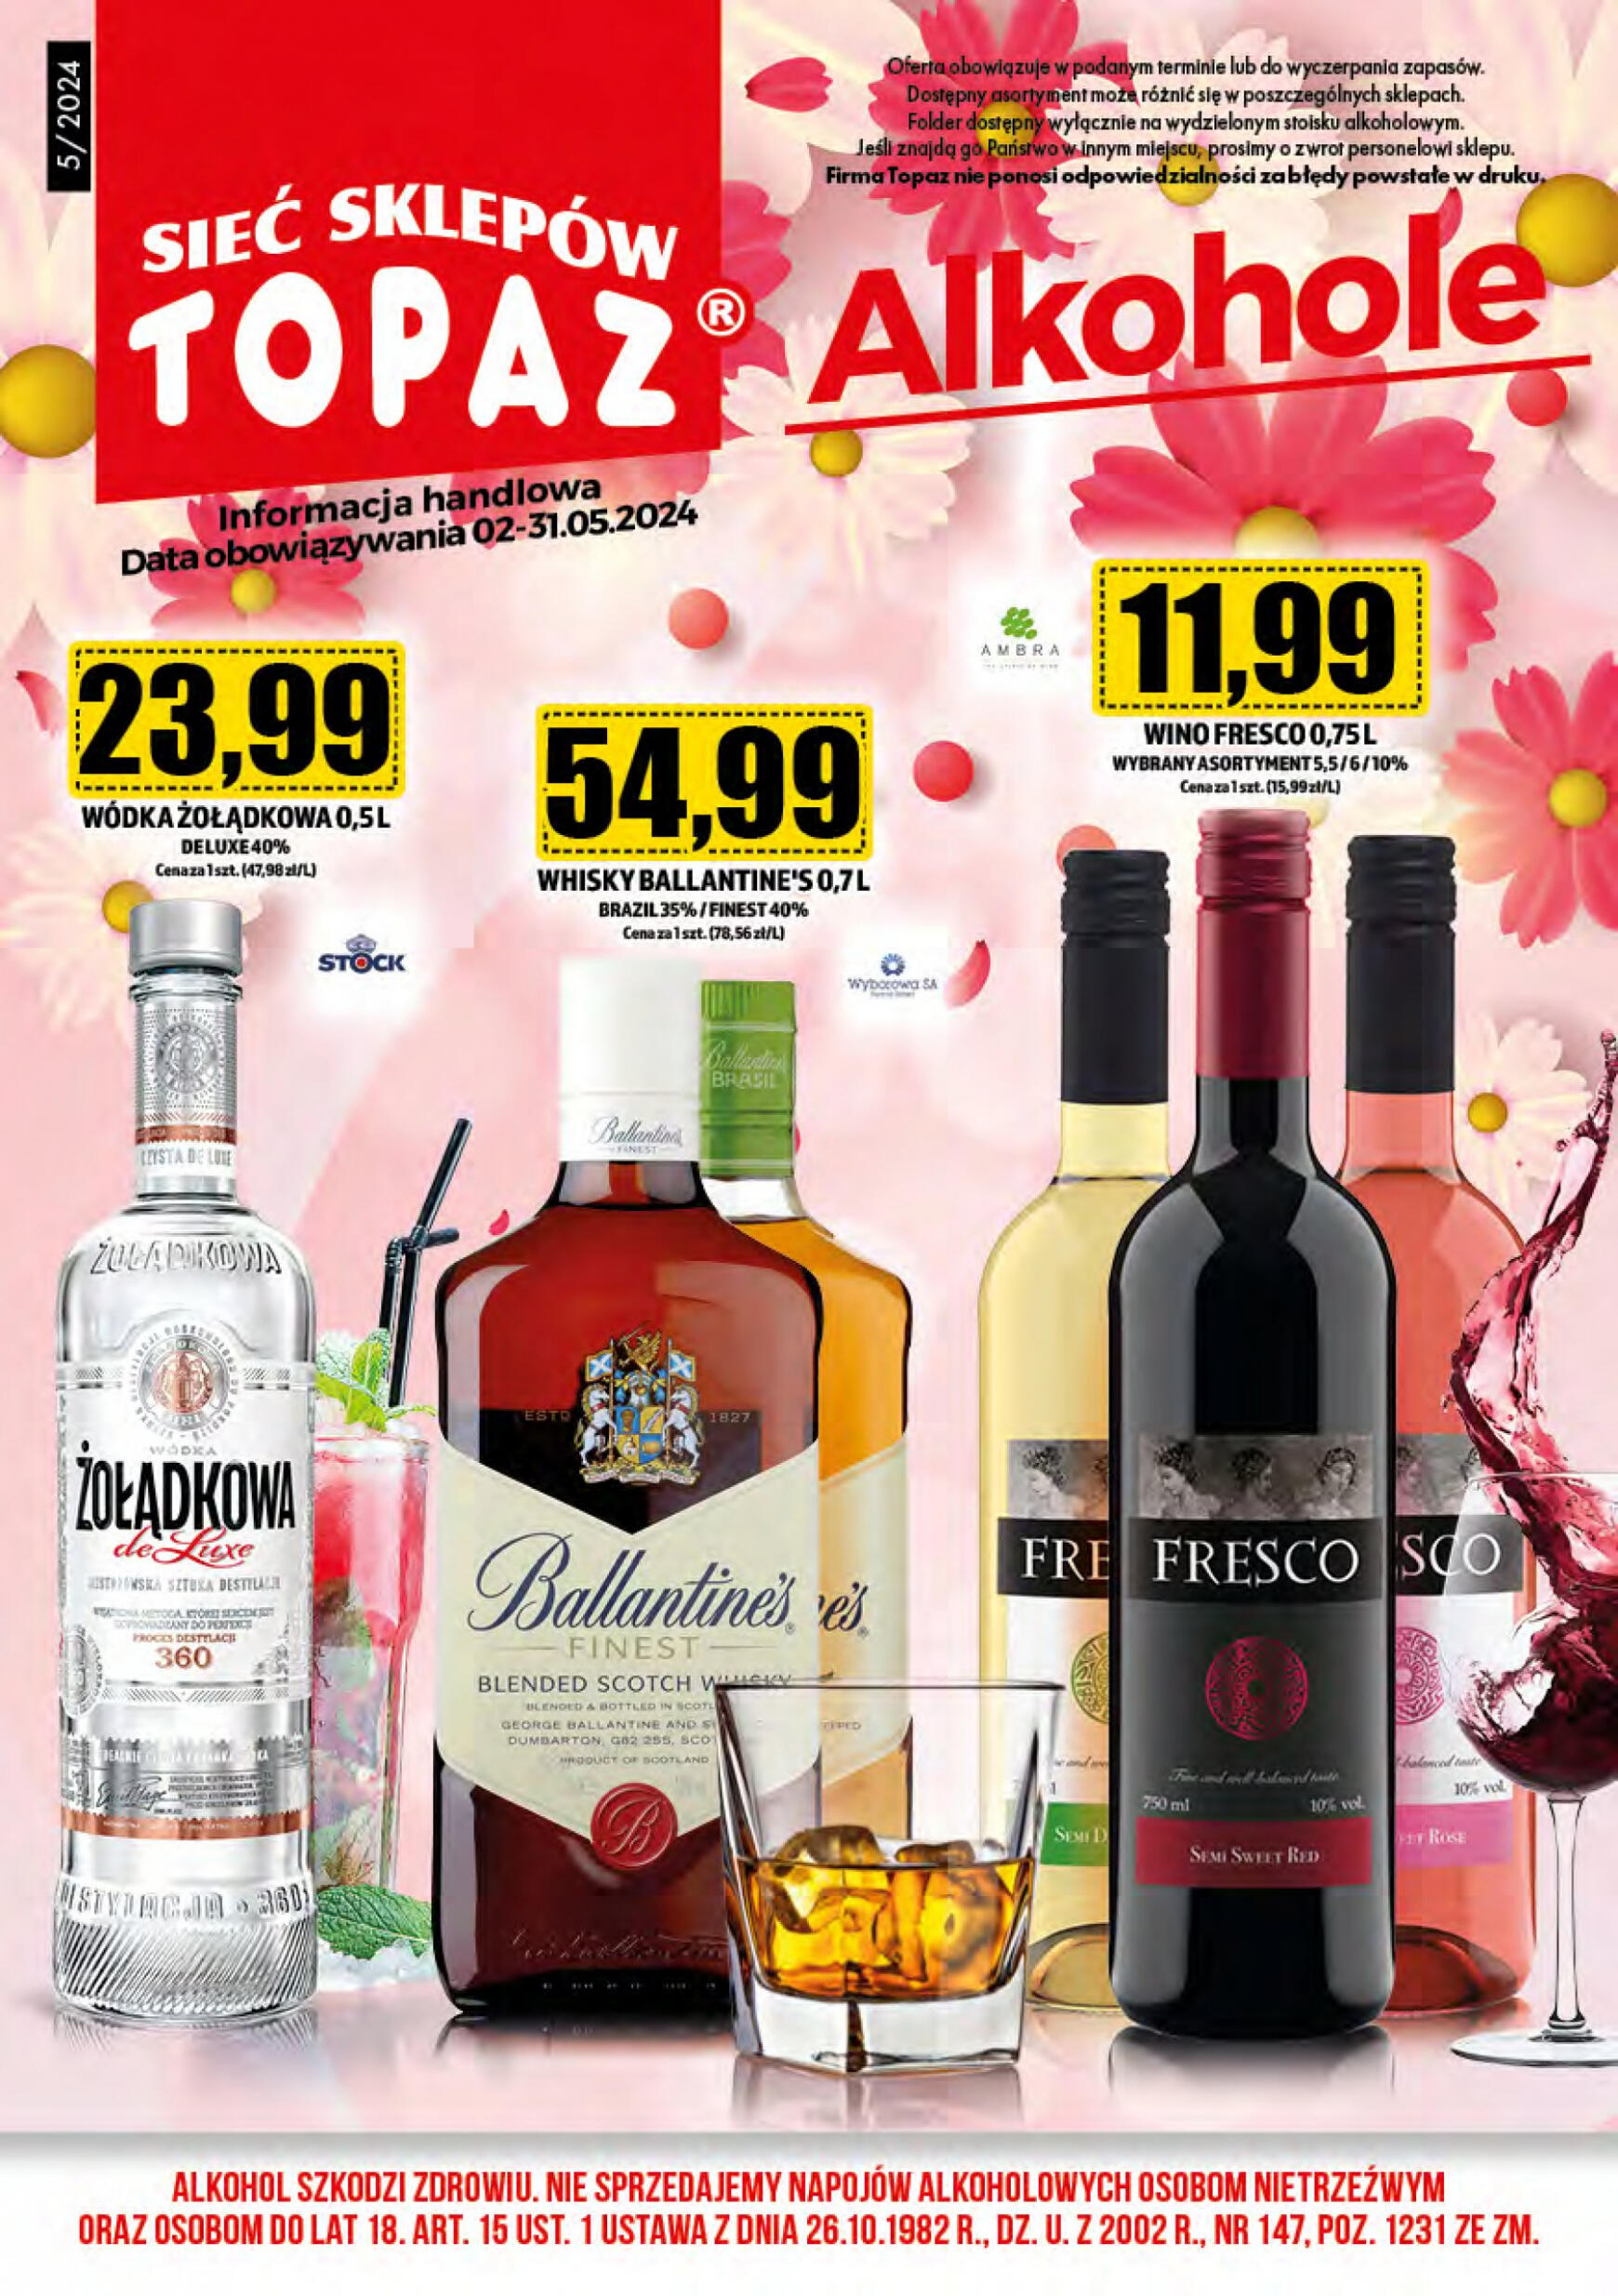 topaz24 - Topaz24 - Alkohole gazetka aktualna ważna od 02.05. - 31.05.